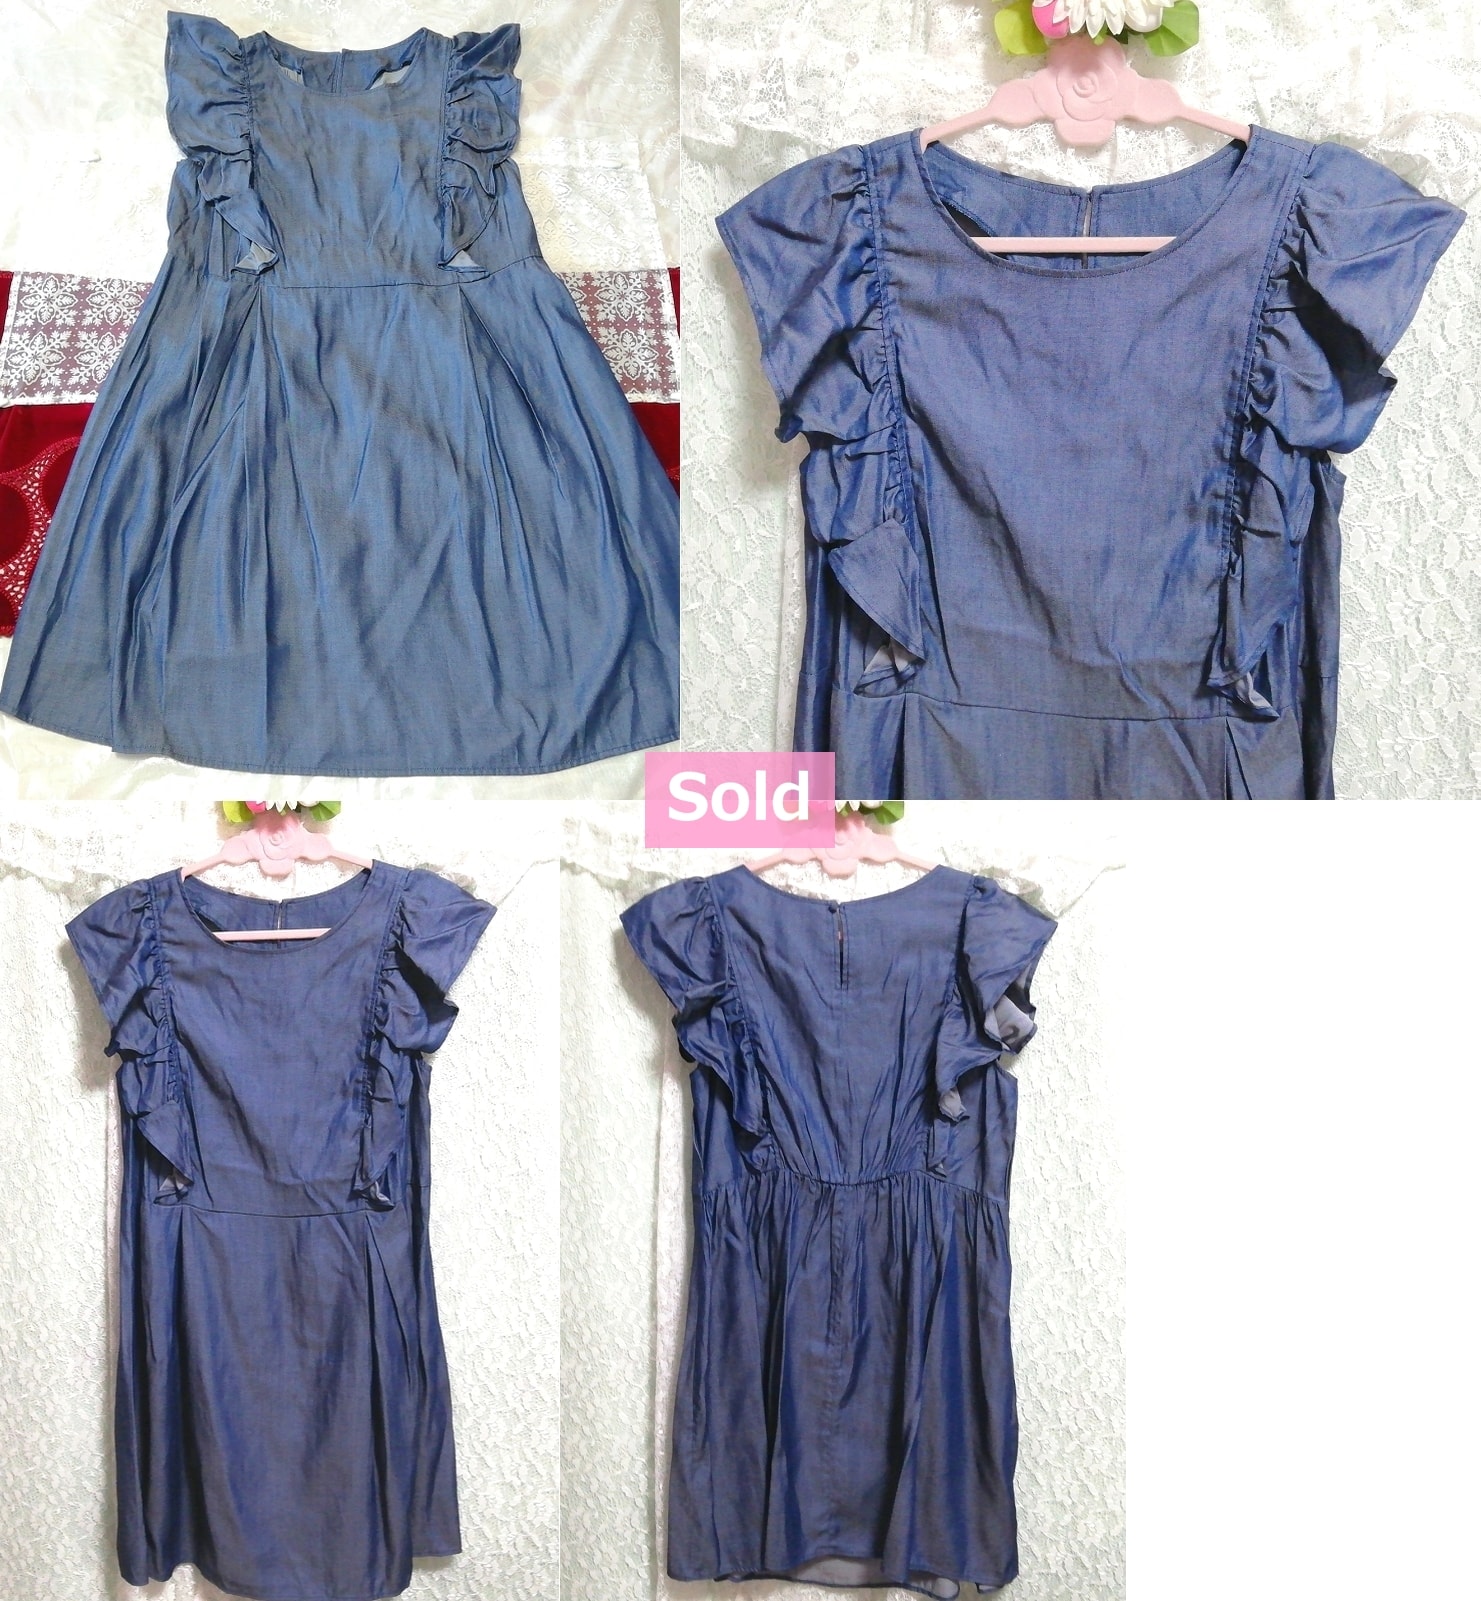 Blue denim style sleeveless ruffle tunic negligee nightgown nightwear dress, tunic, sleeveless, sleeveless, m size